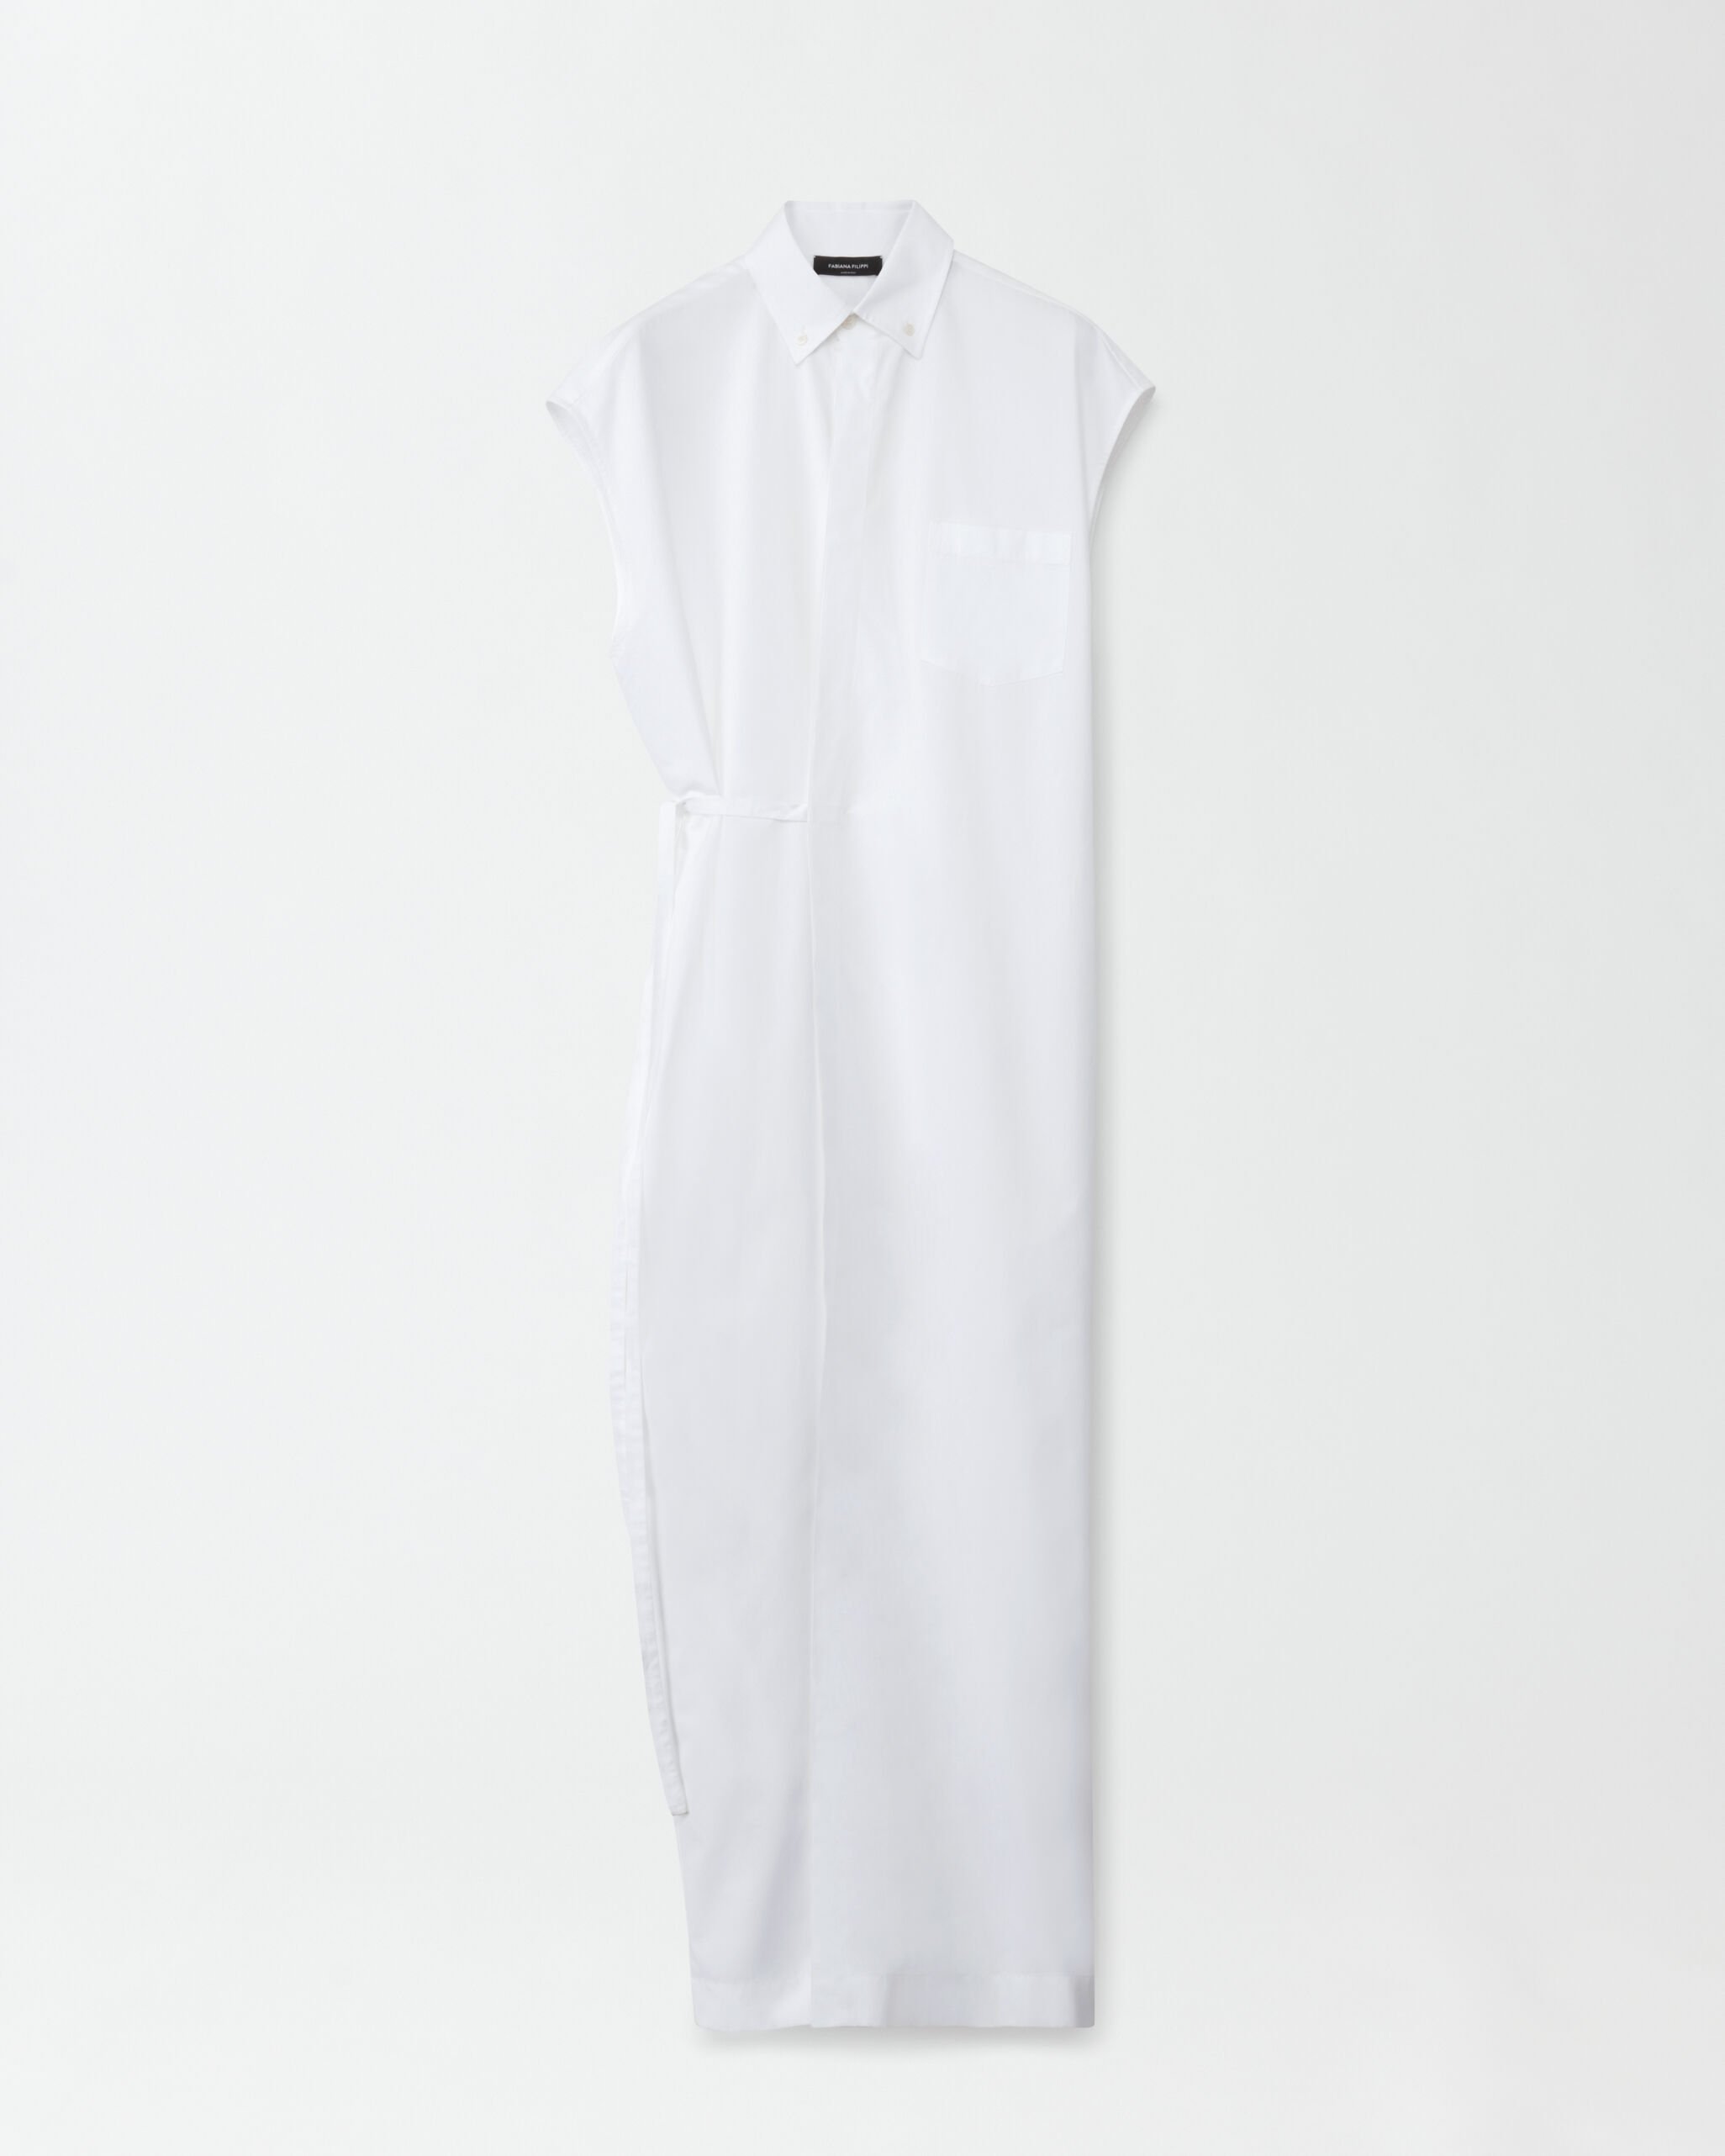 Fabiana Filippi Kleid aus Leinengewebe, Optisches Weiß ABD264F125I9370000